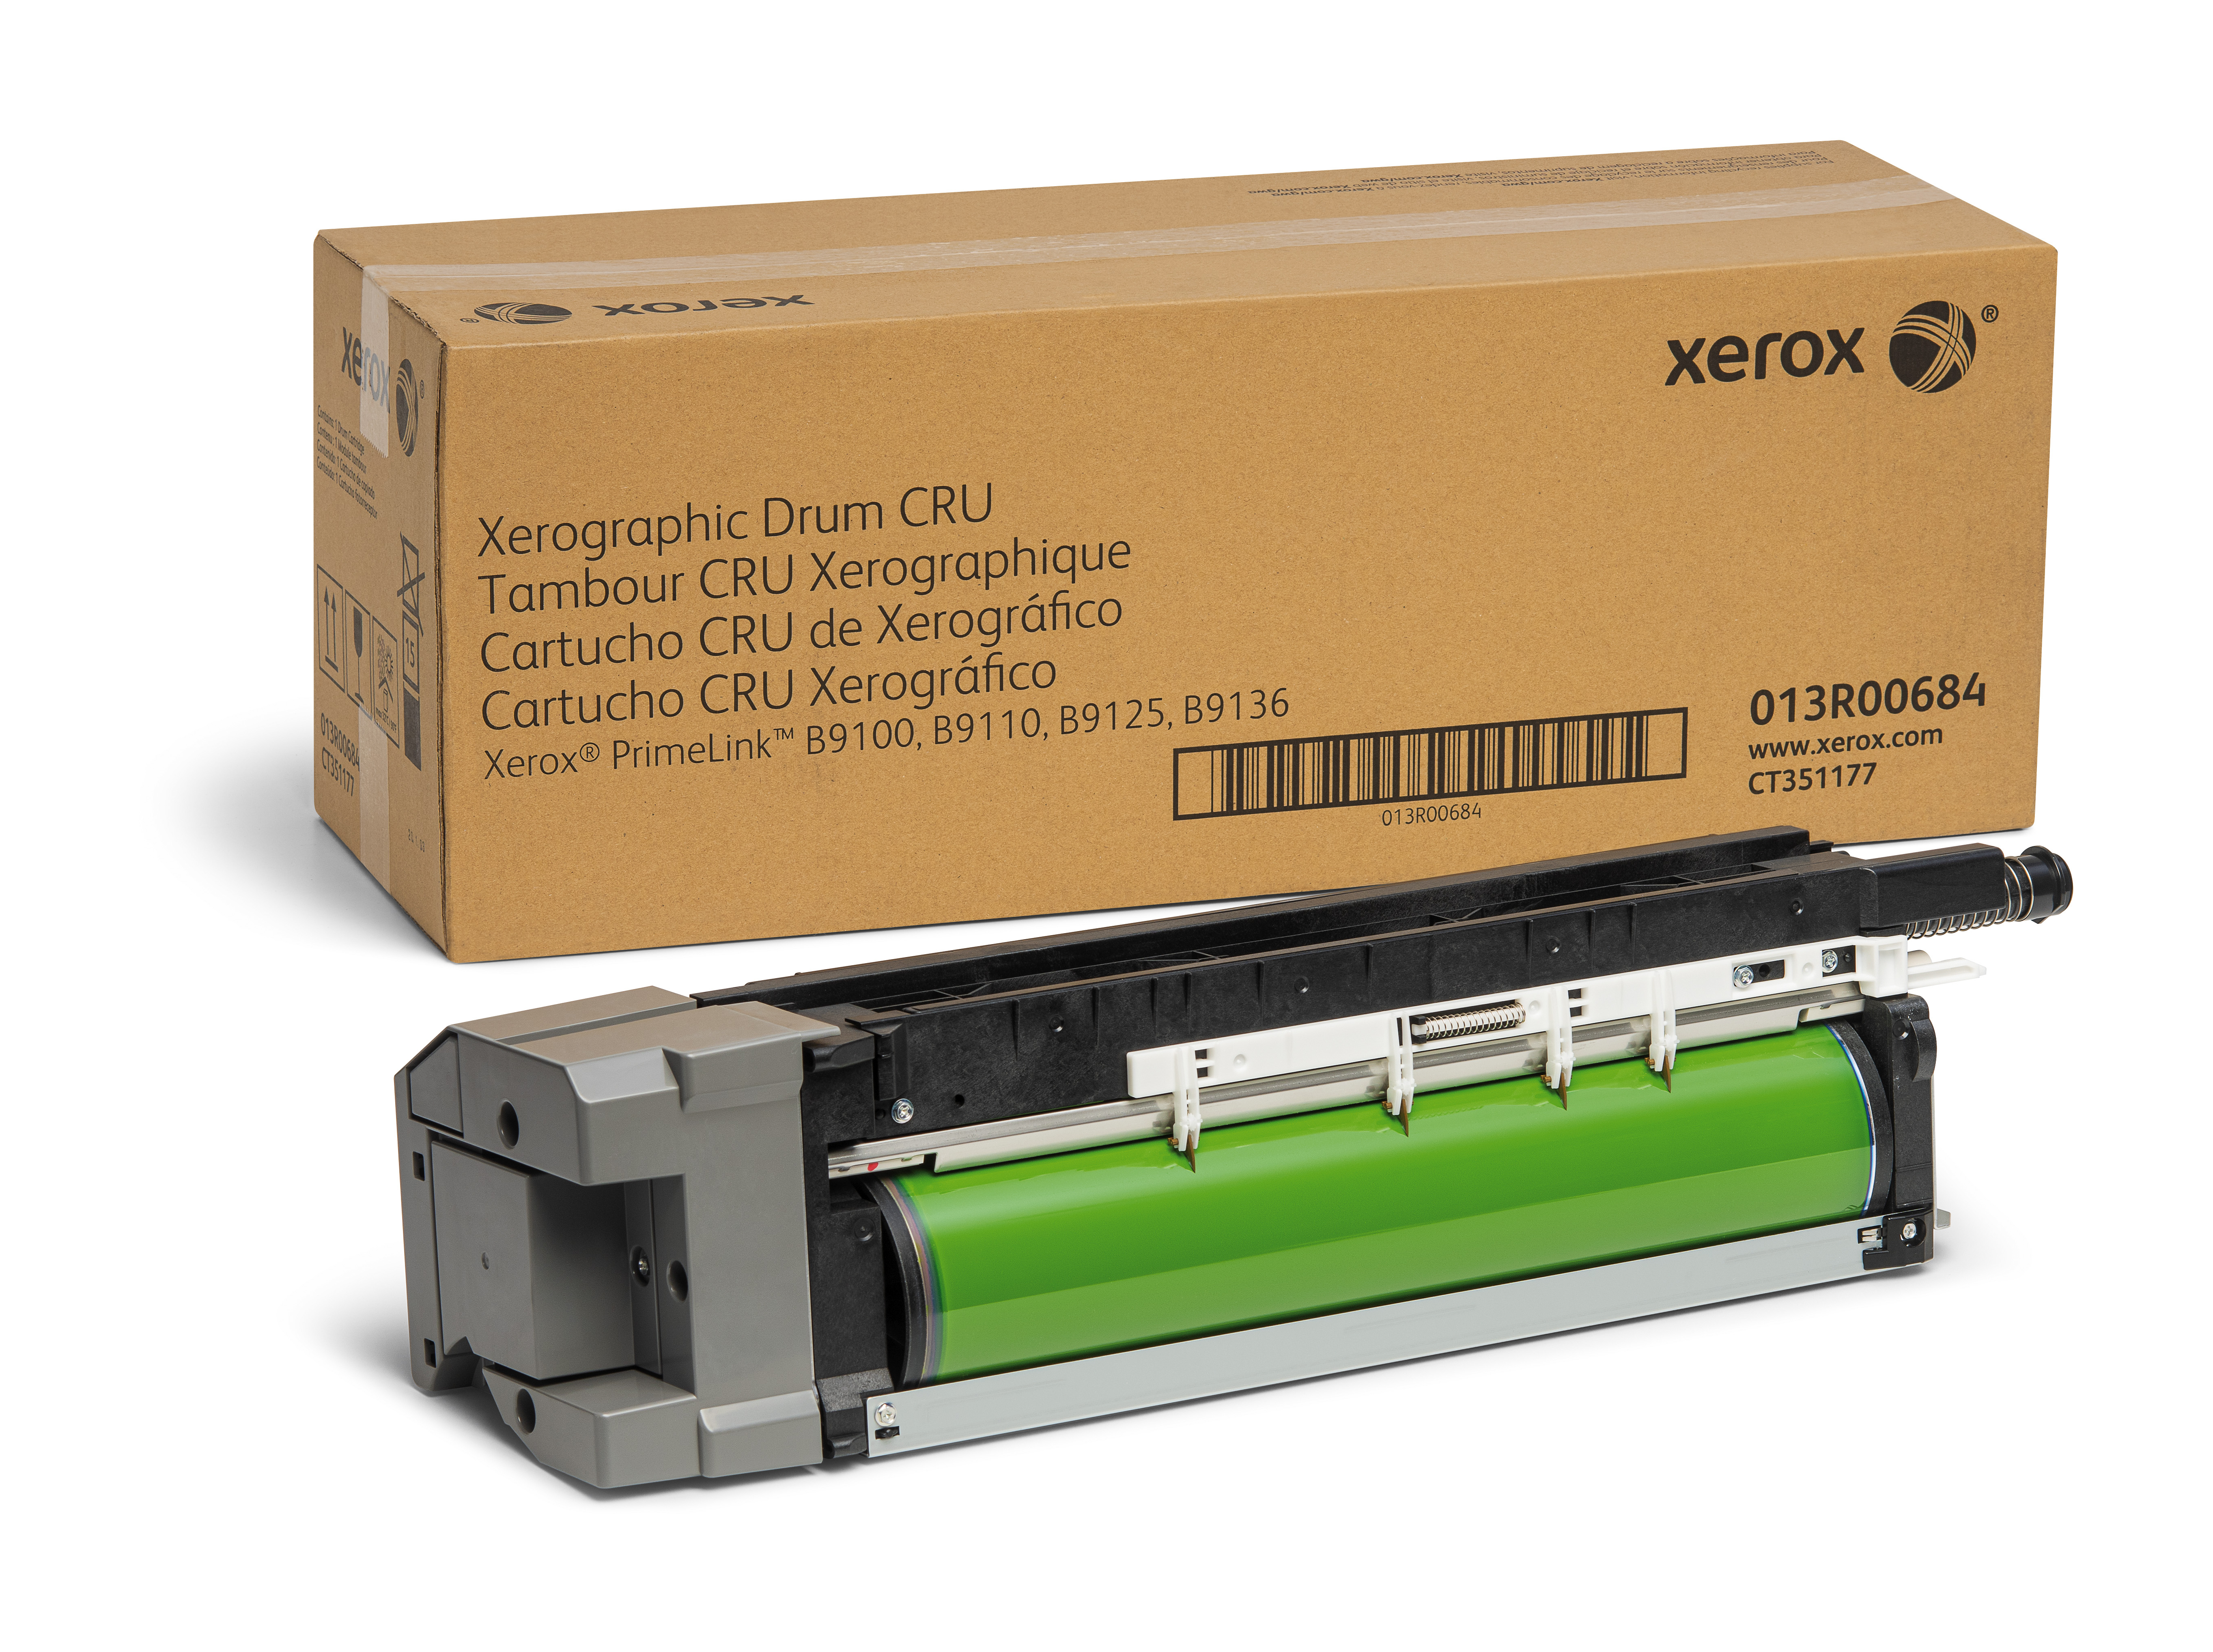 Xerox Primelink B9100 Drum Cartridge 013r Genuine Xerox Supplies